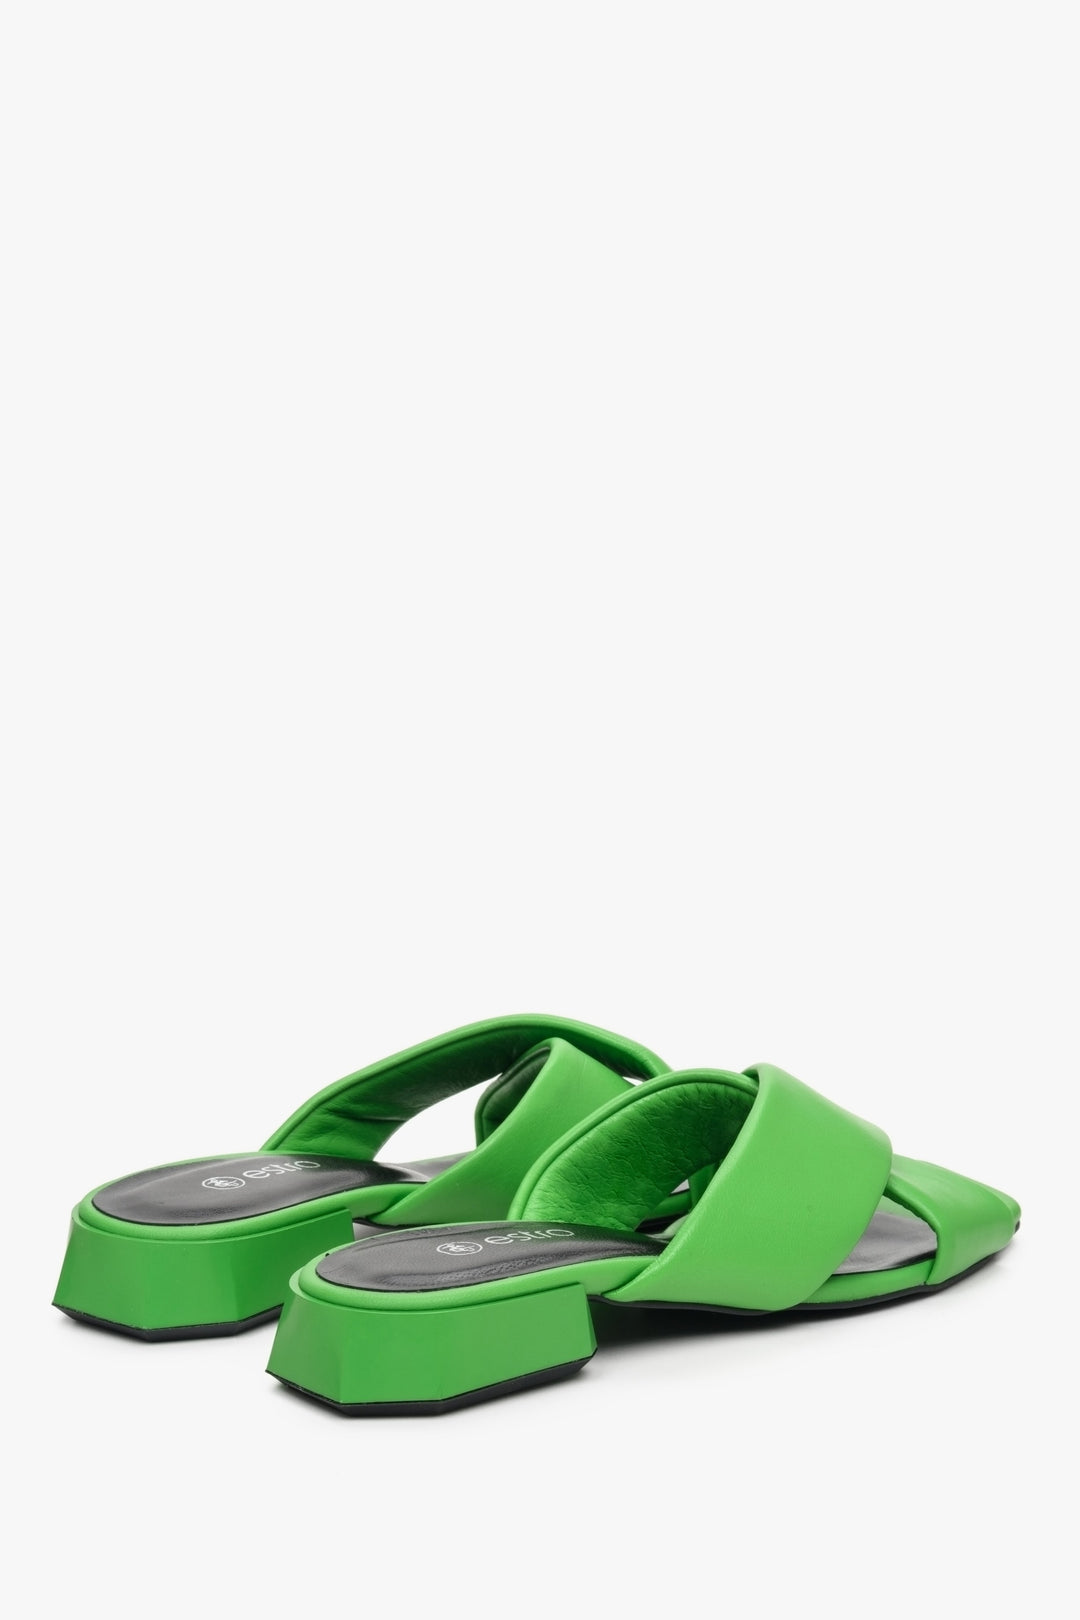 Damskie klapki skórzane na niskim obcasie w kolorze zielonym - zbliżenie na tył buta.